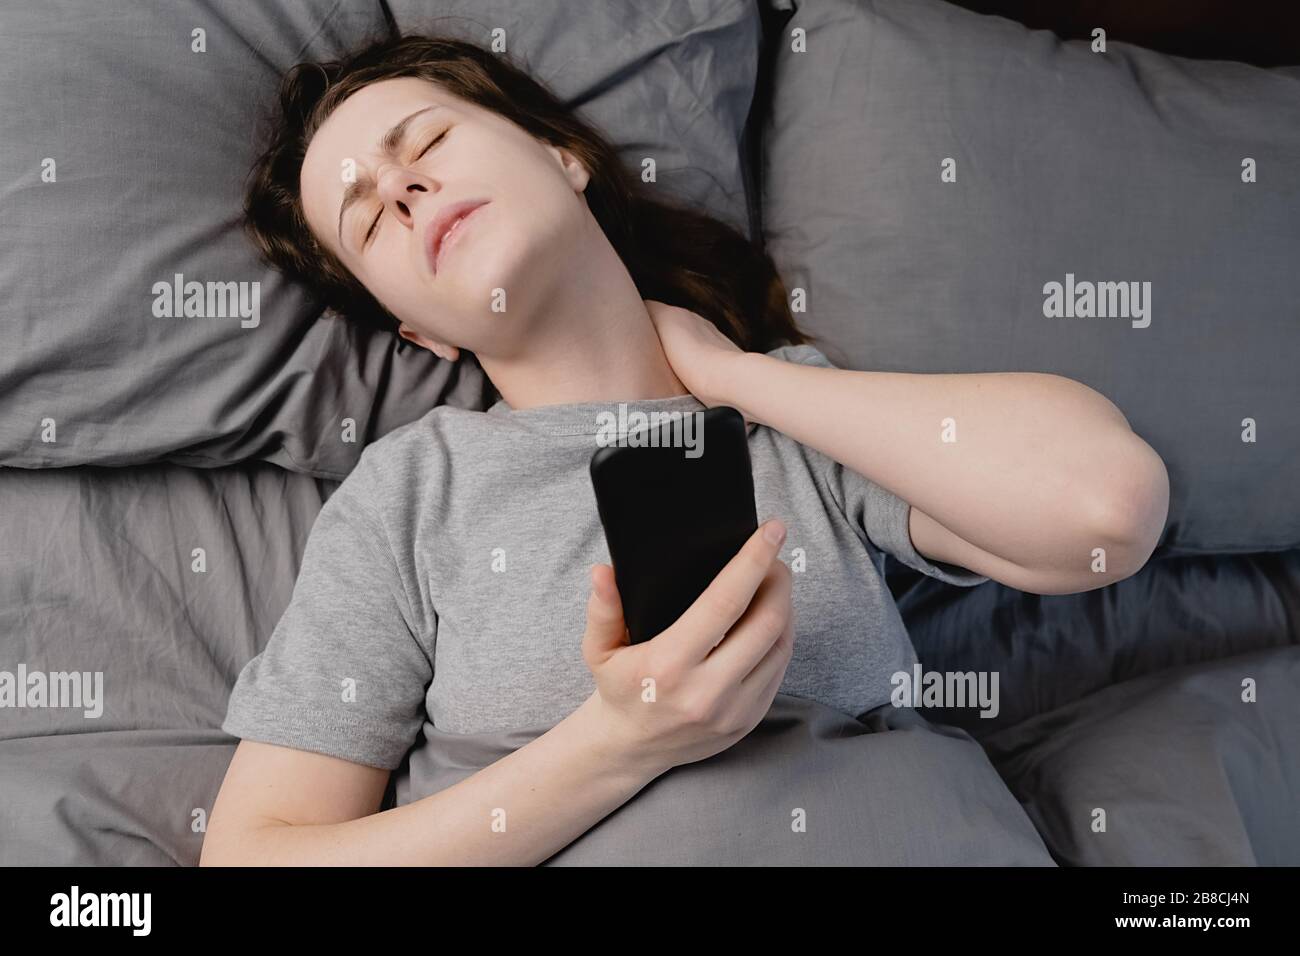 Fibromyalgie-Konzept. Draufsicht auf unglückliche junge Frau, die morgens  im Bett liegt, spürt Schmerzen im Nacken nach dem Schlaf, massiert  angespannte Nackenmuskeln Stockfotografie - Alamy